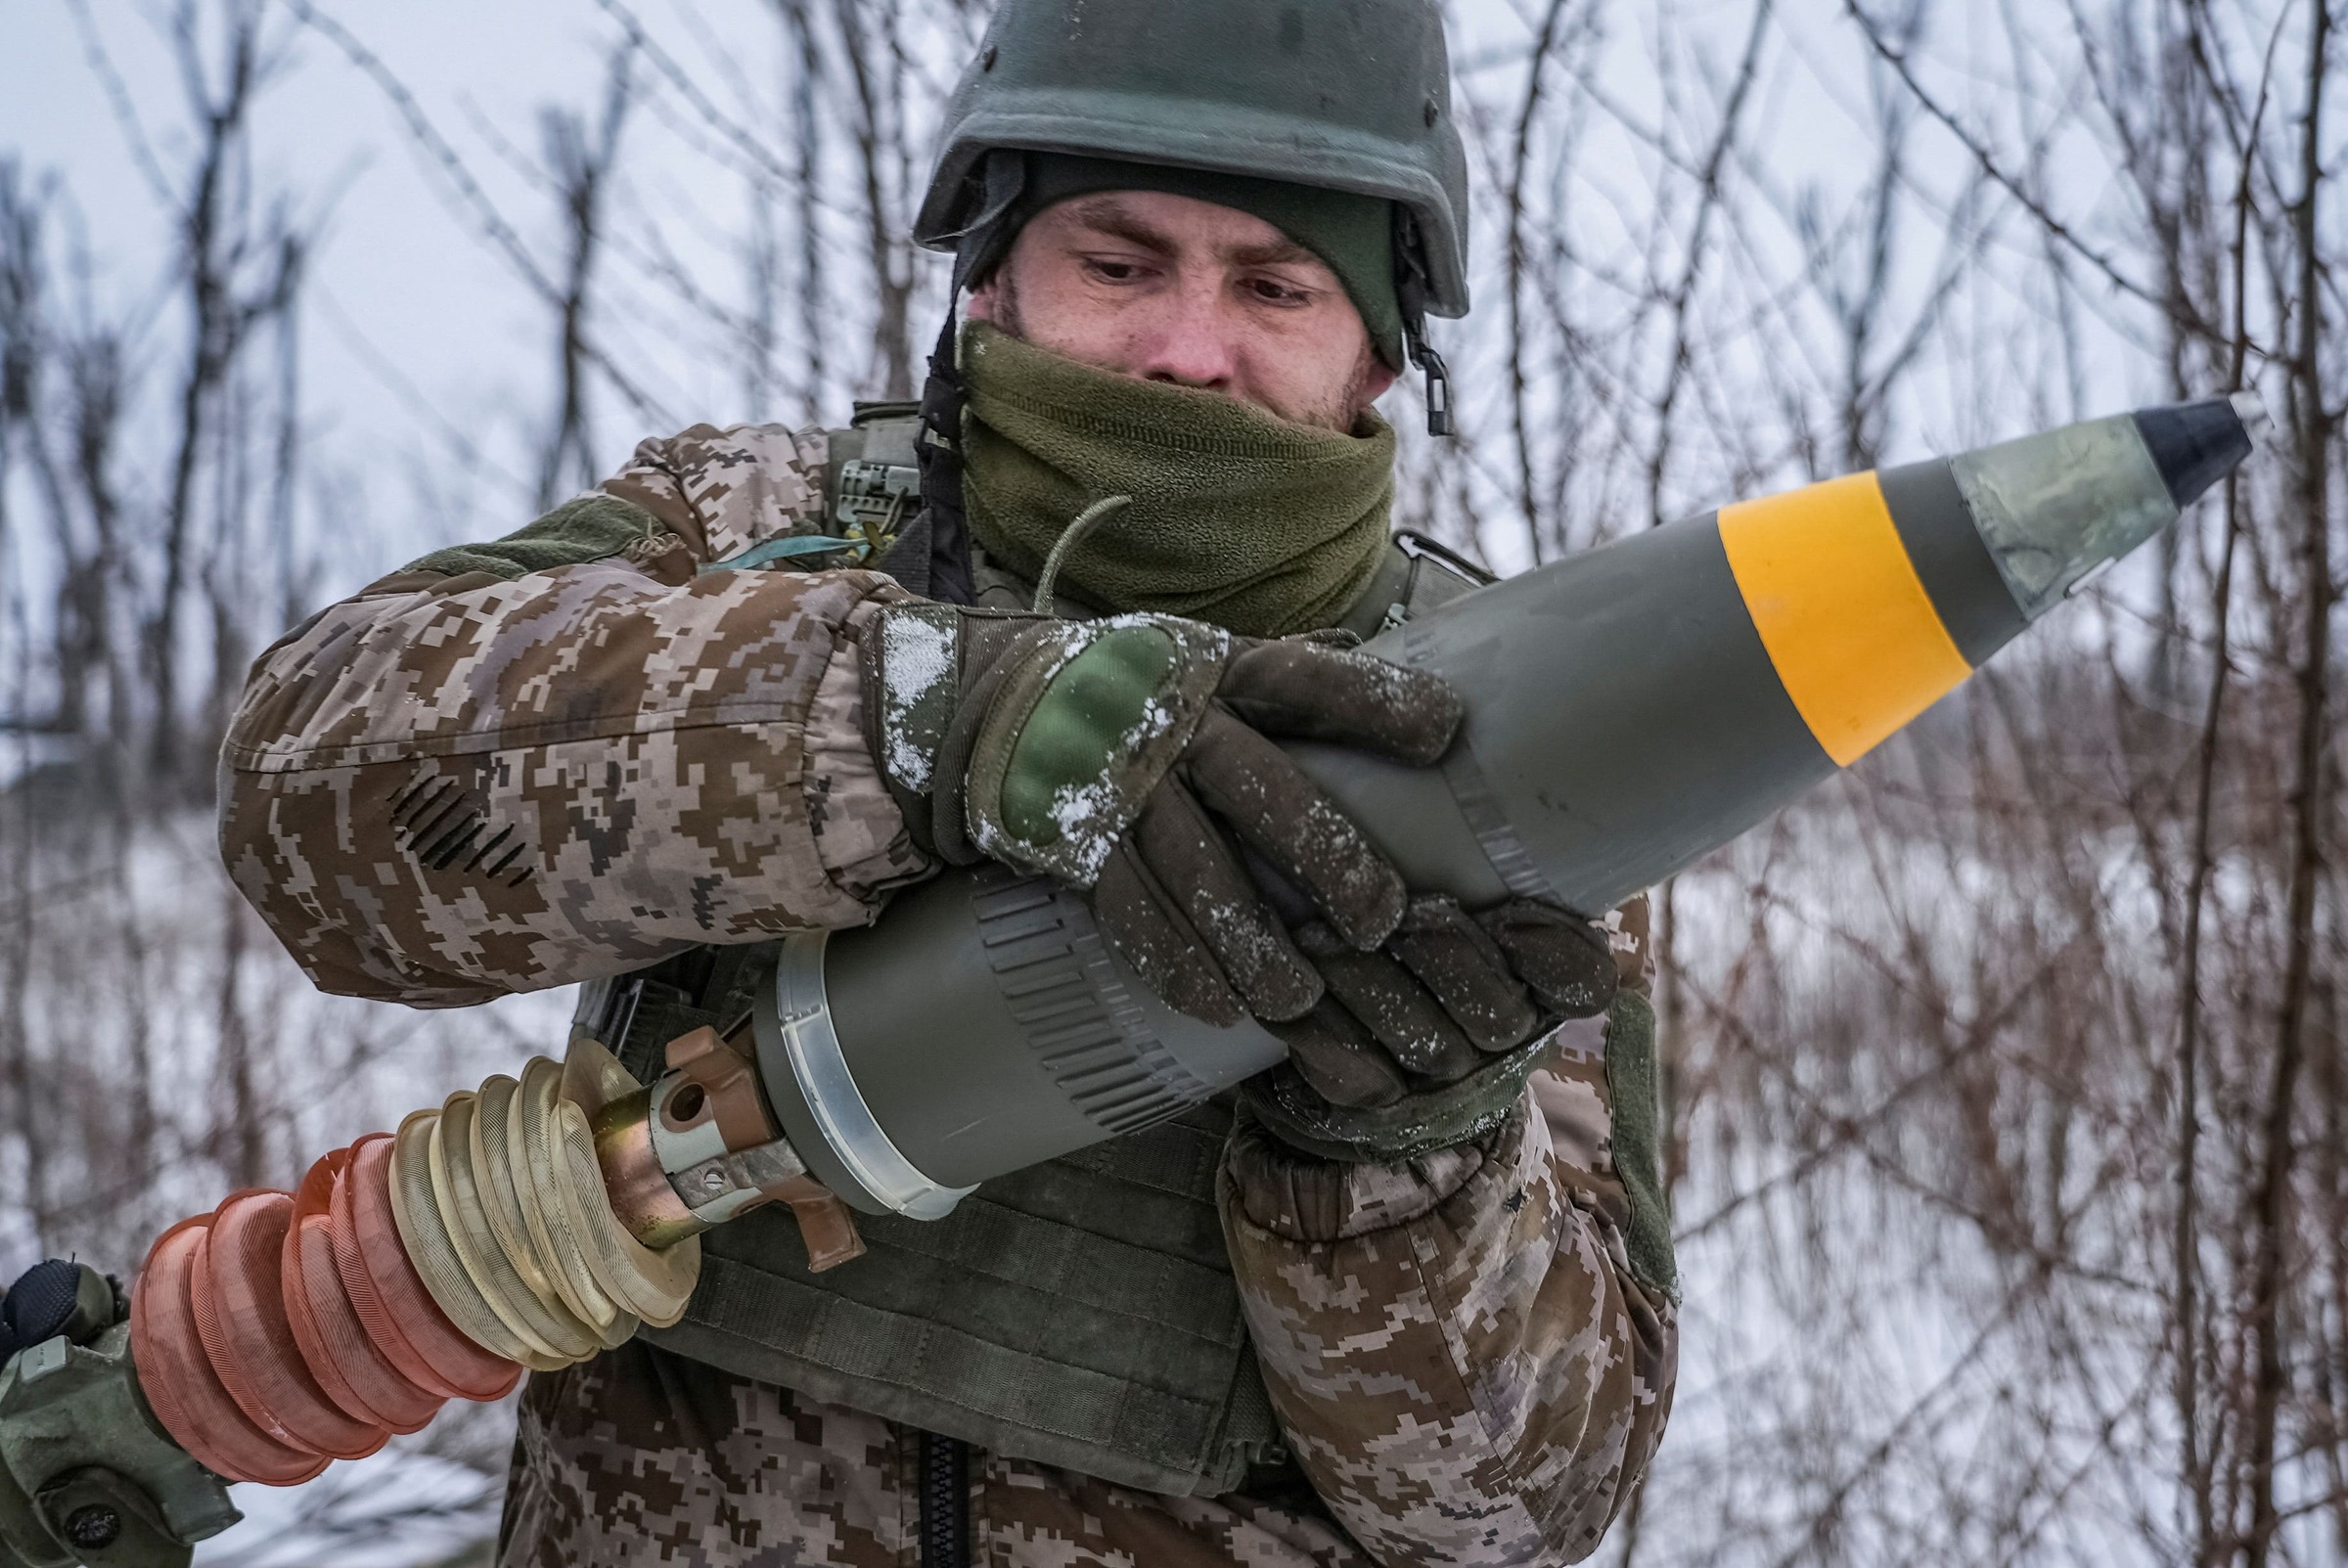  添购22万枚砲弹支援乌克兰   北约签约填补武器库存 